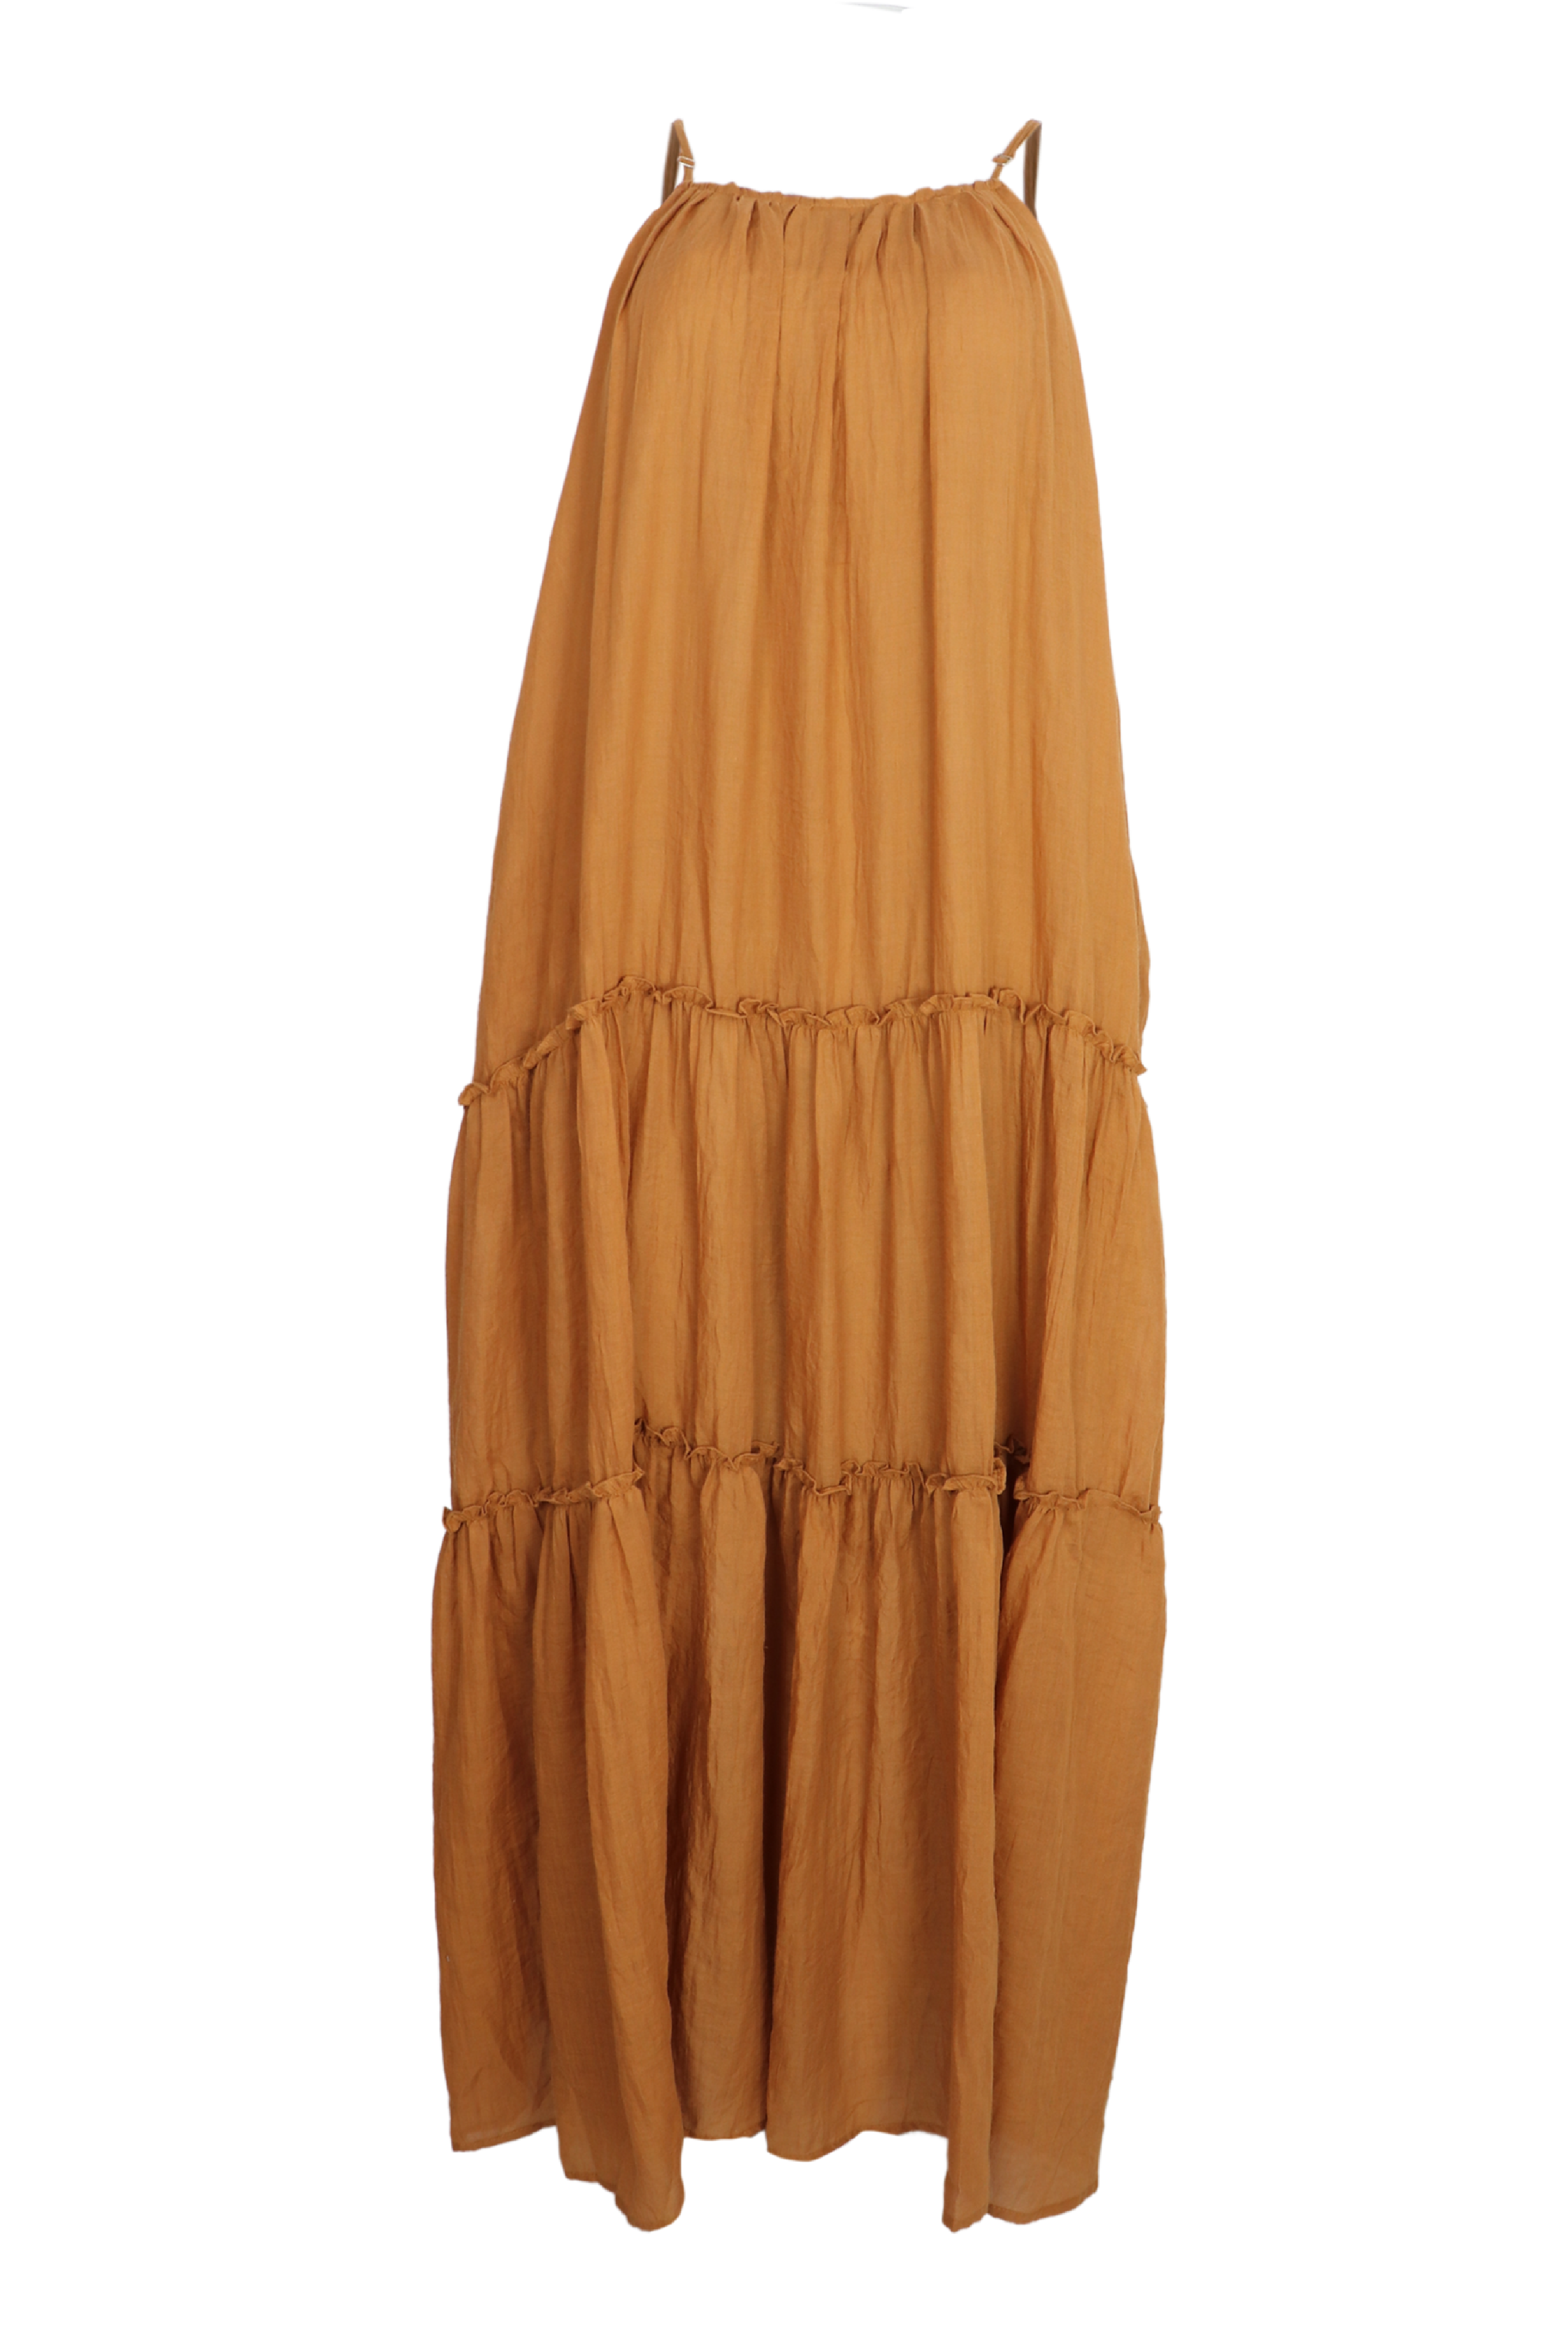 Hermoso vestito largo de tiras en hombros color camel